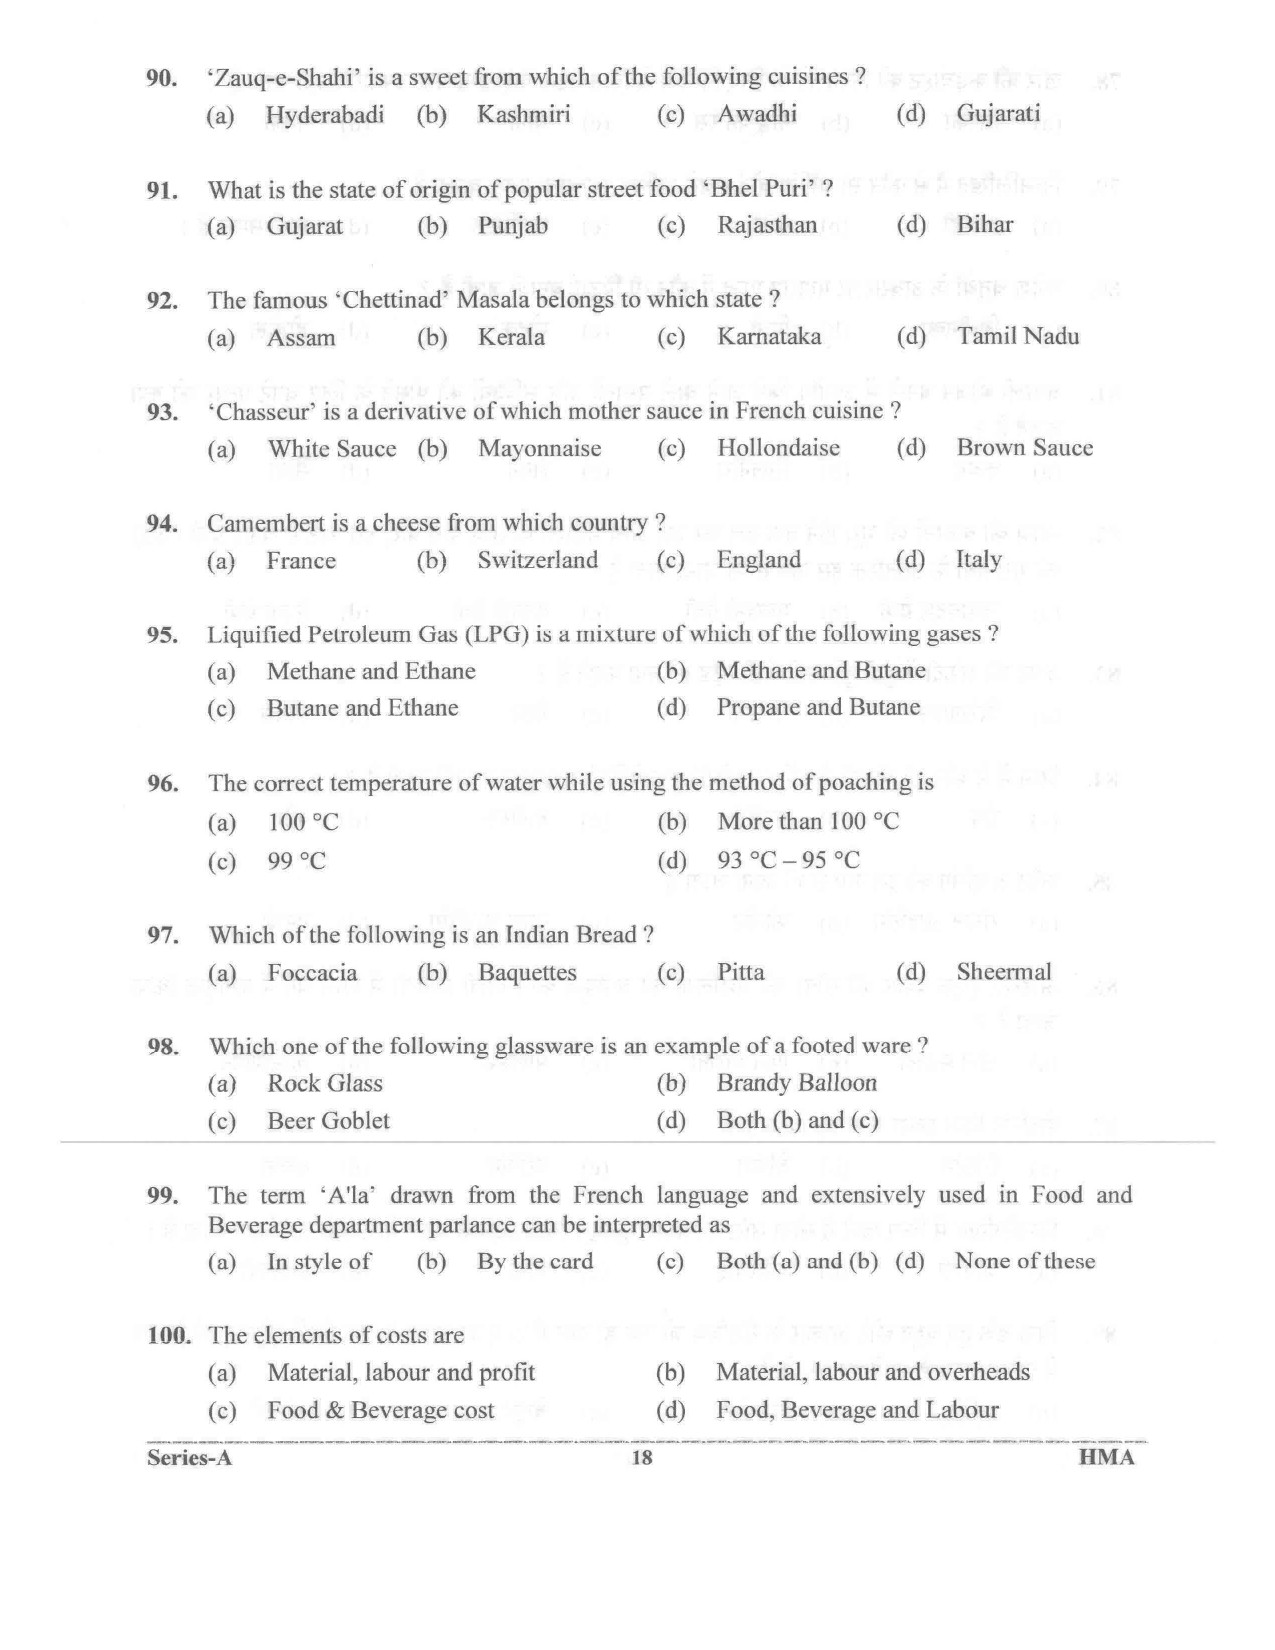 UKPSC Vyawasthapak Examination Question Paper 2021 17